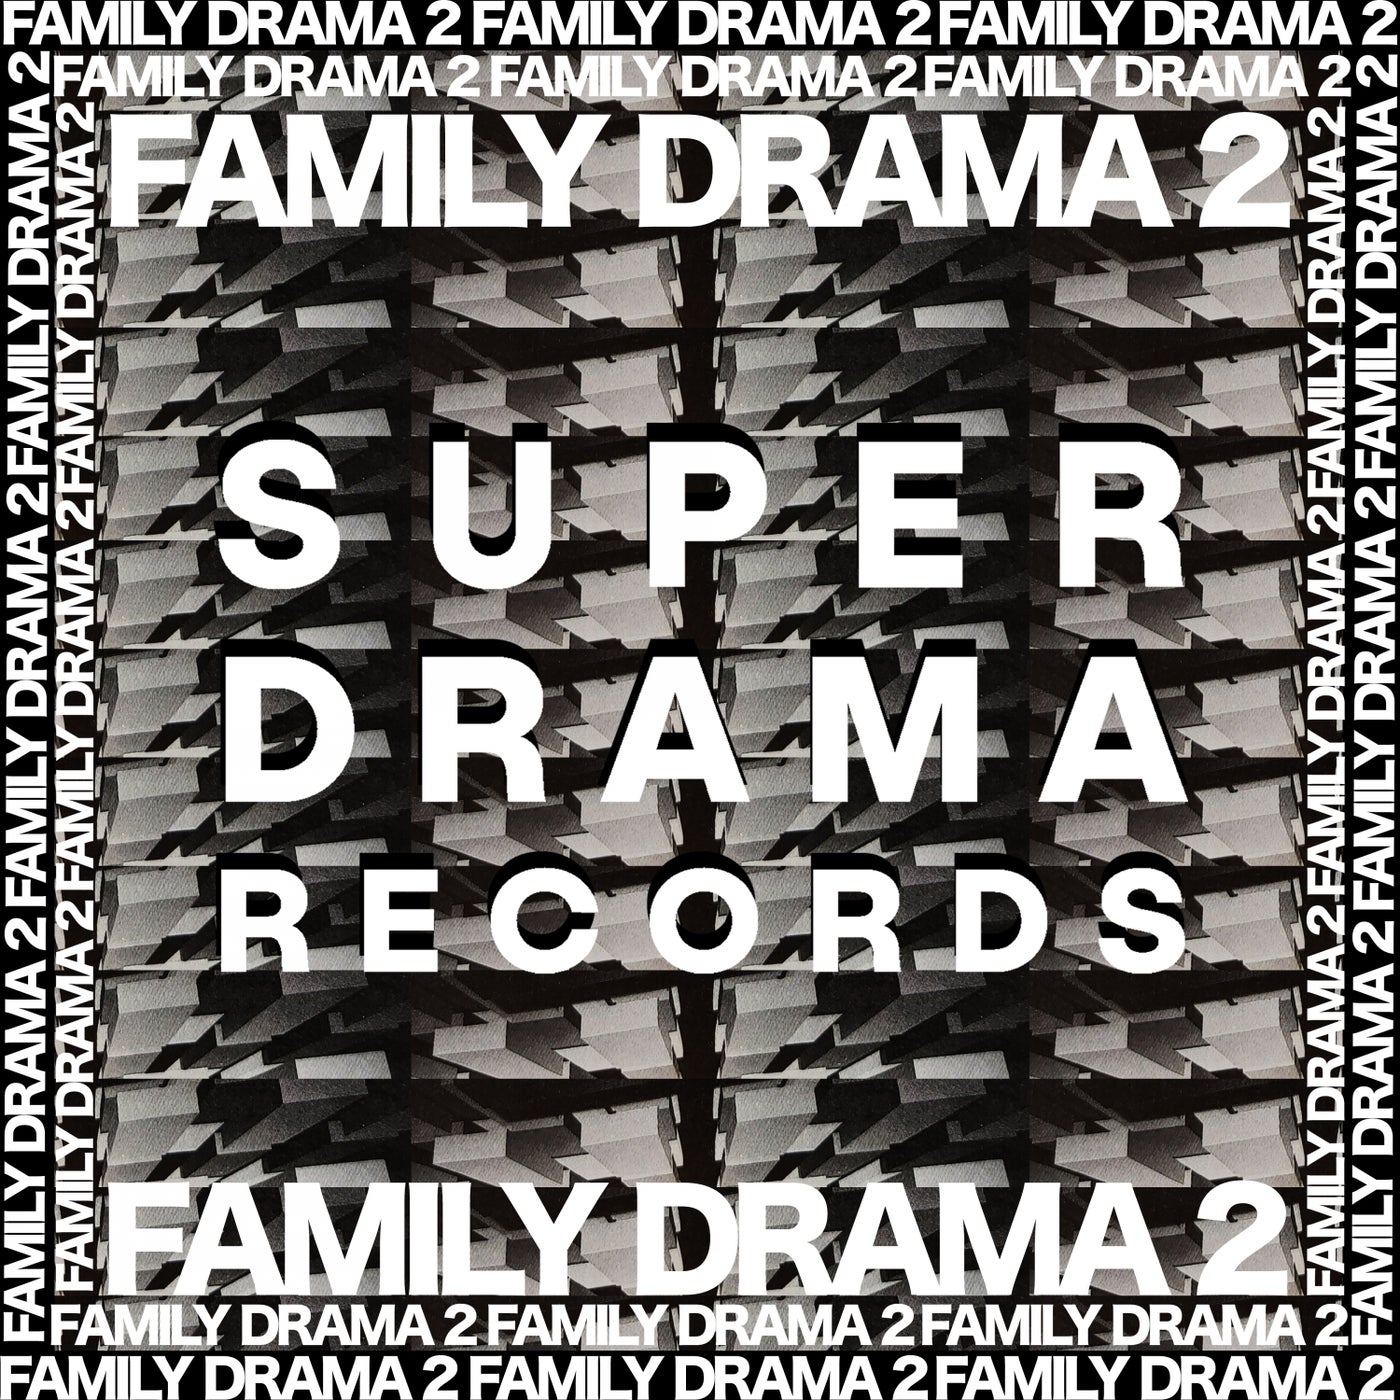 Family Drama 2